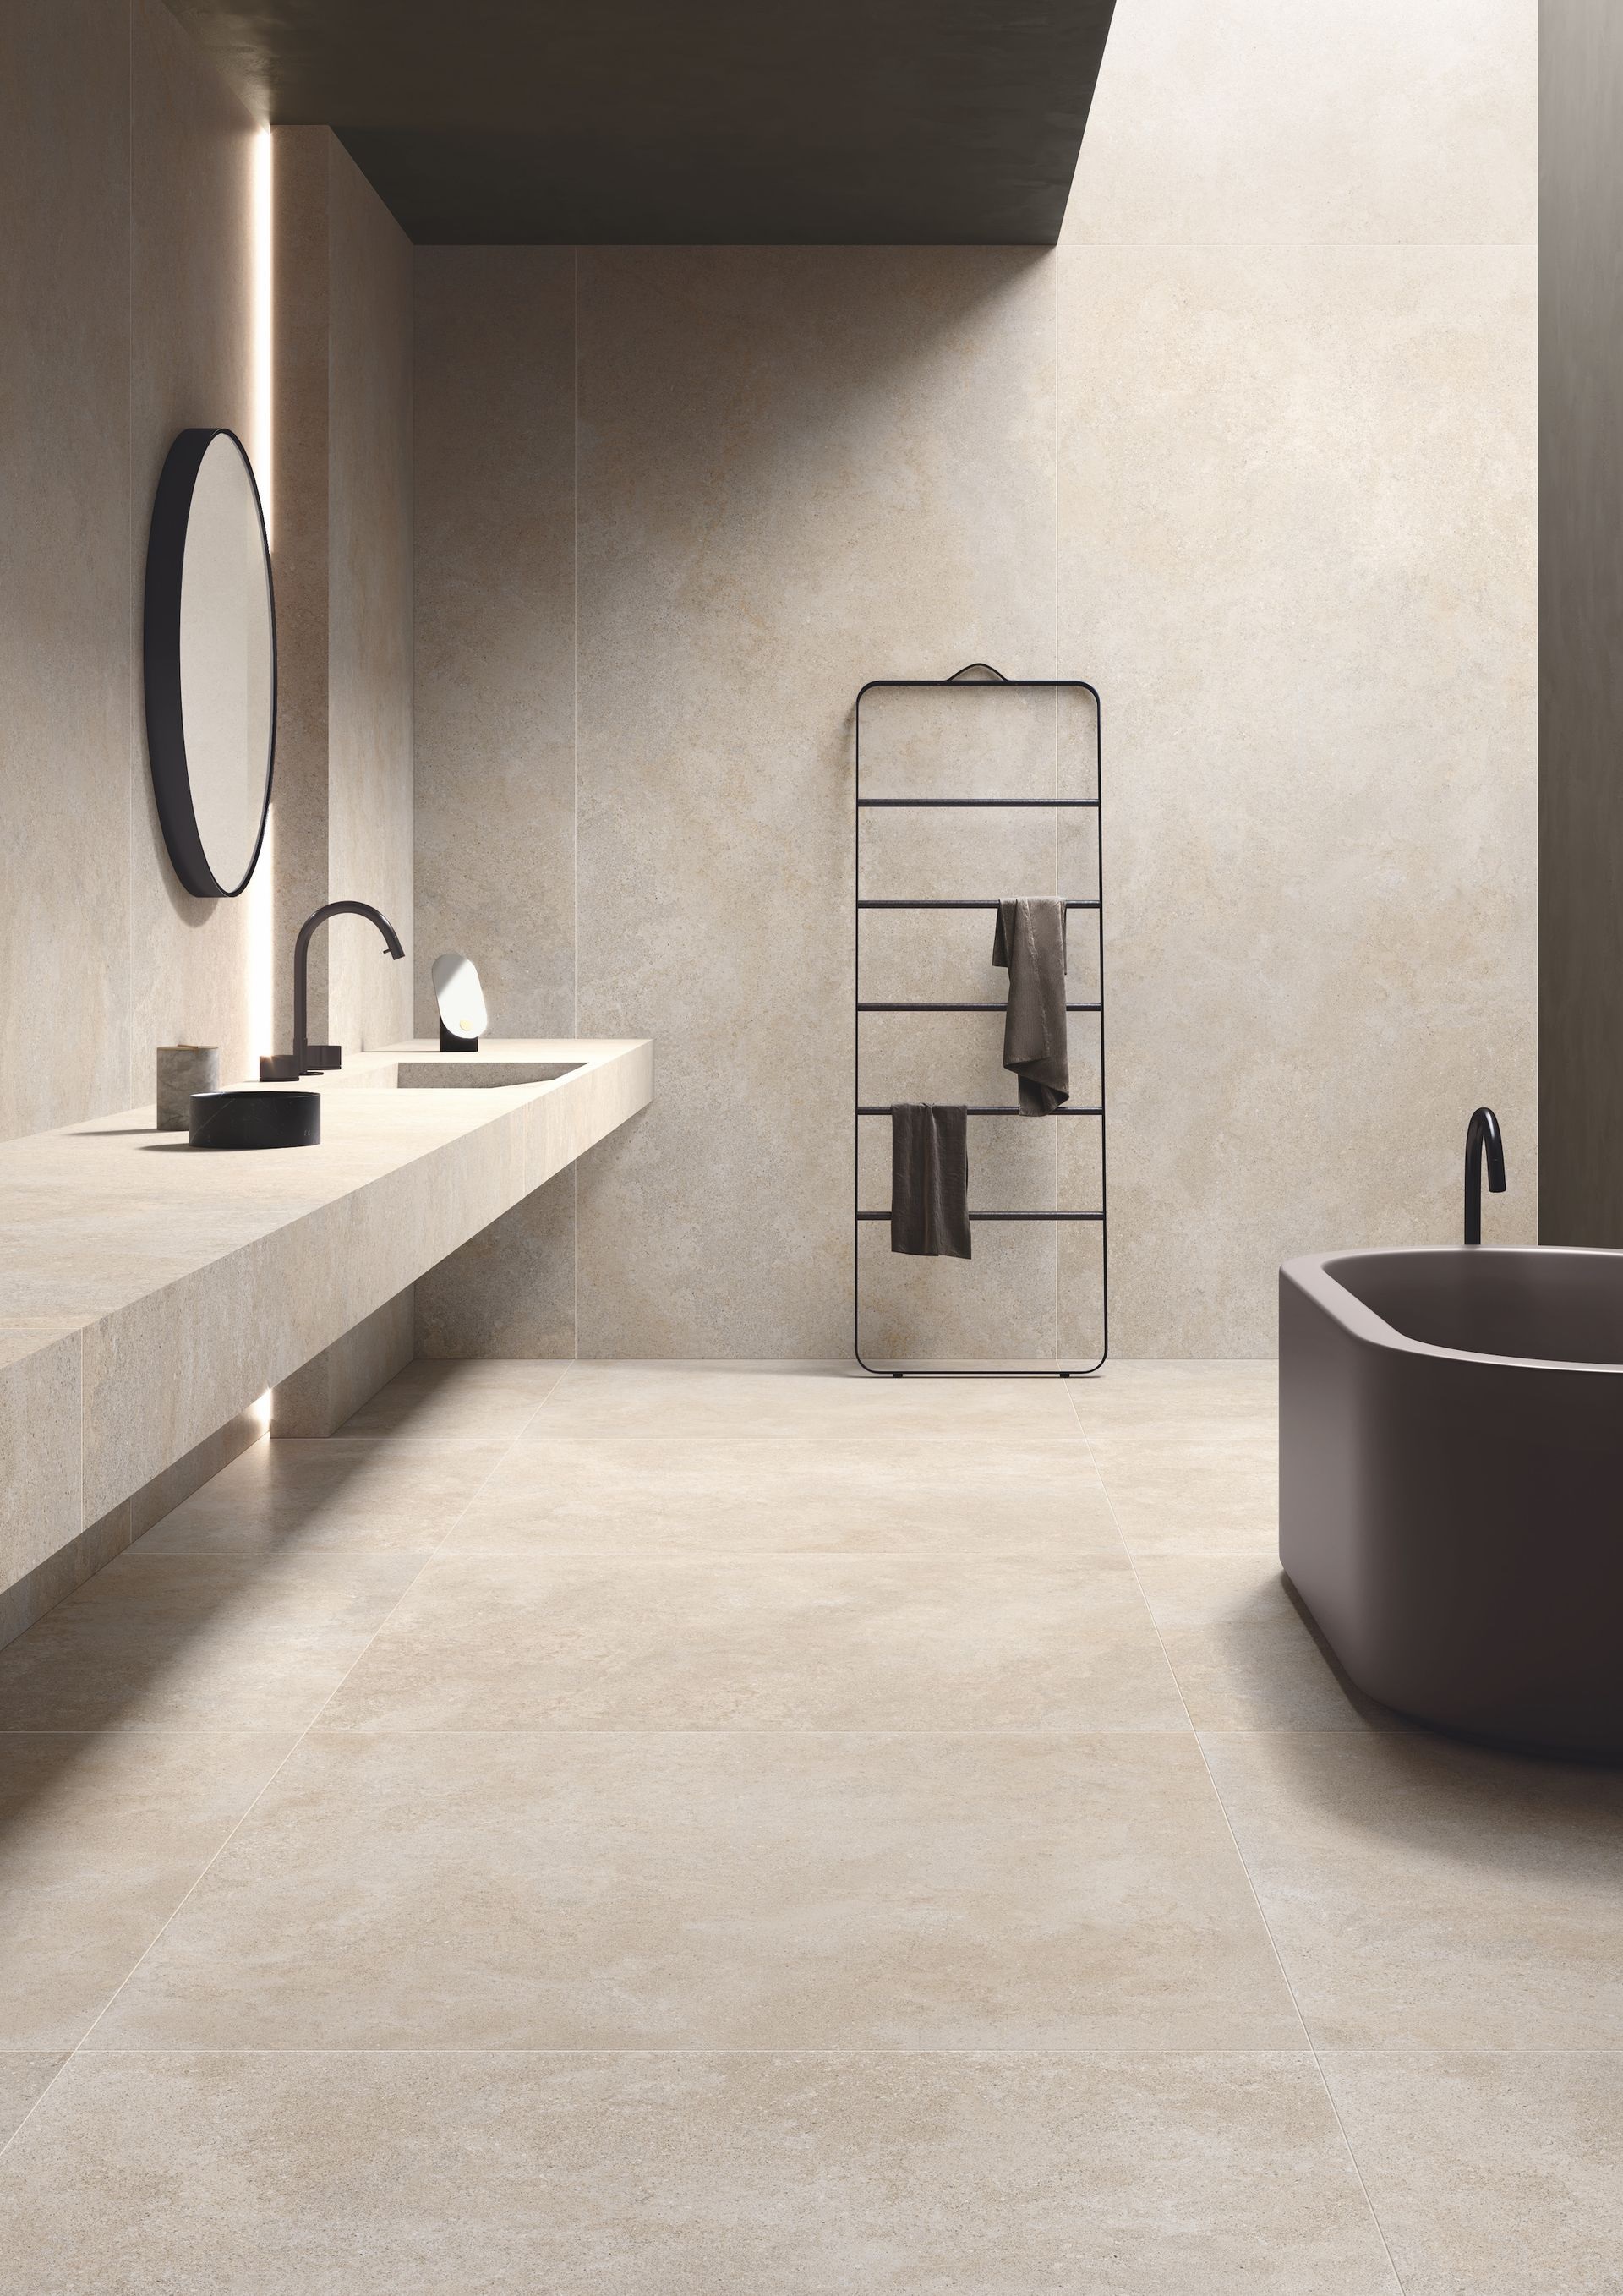 Carrelage effet pierre beige nuances claires sans motifs 60x120 cm dans une salle de bain moderne tons beige baignoire noire étagère métallique